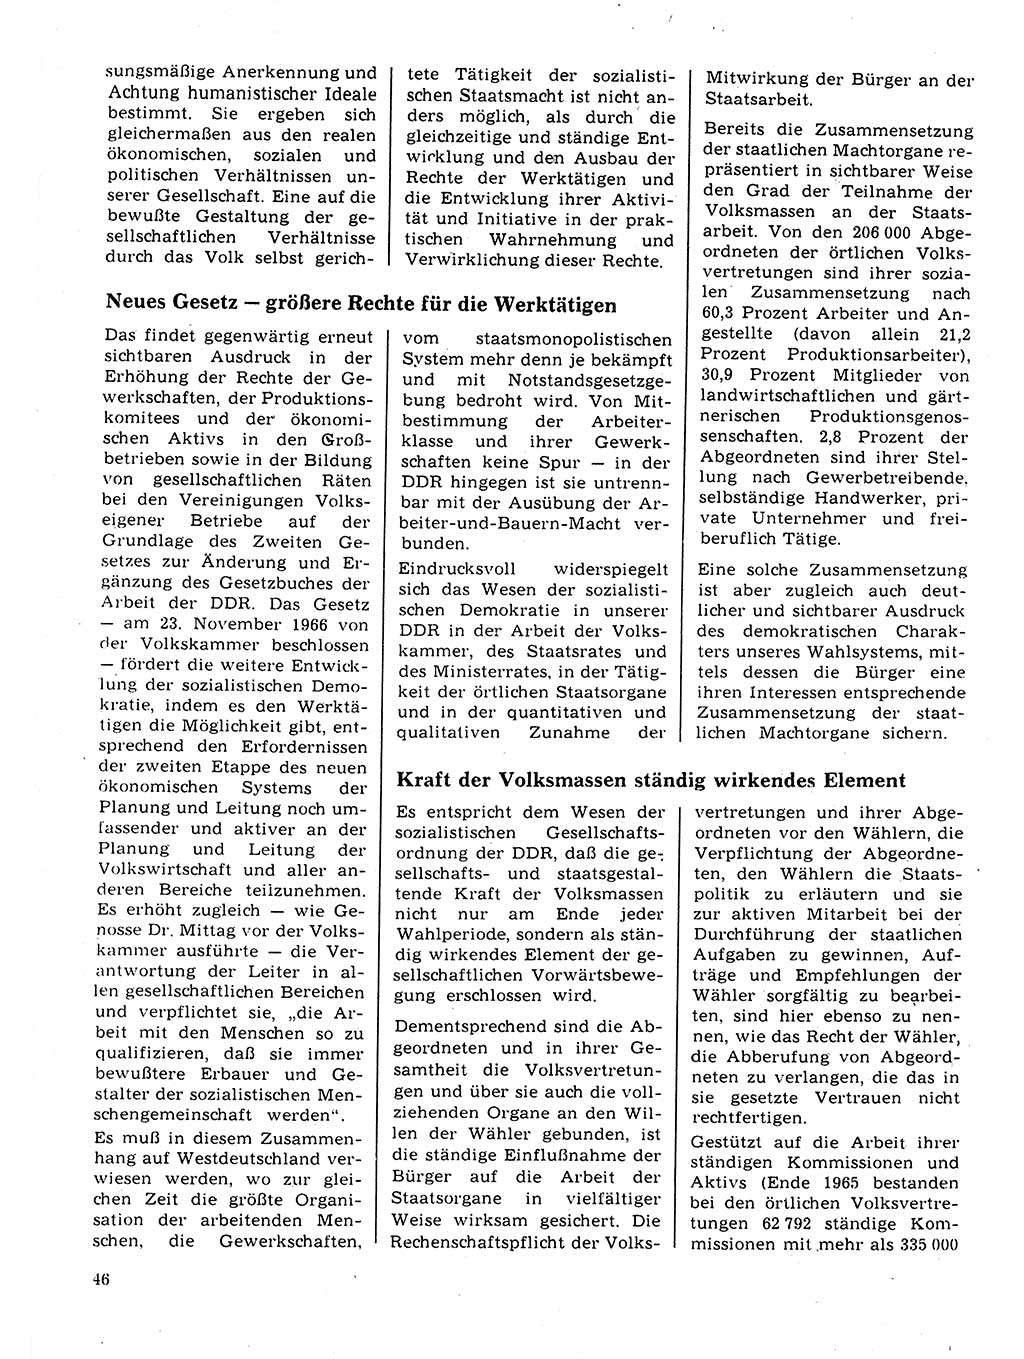 Neuer Weg (NW), Organ des Zentralkomitees (ZK) der SED (Sozialistische Einheitspartei Deutschlands) für Fragen des Parteilebens, 22. Jahrgang [Deutsche Demokratische Republik (DDR)] 1967, Seite 46 (NW ZK SED DDR 1967, S. 46)